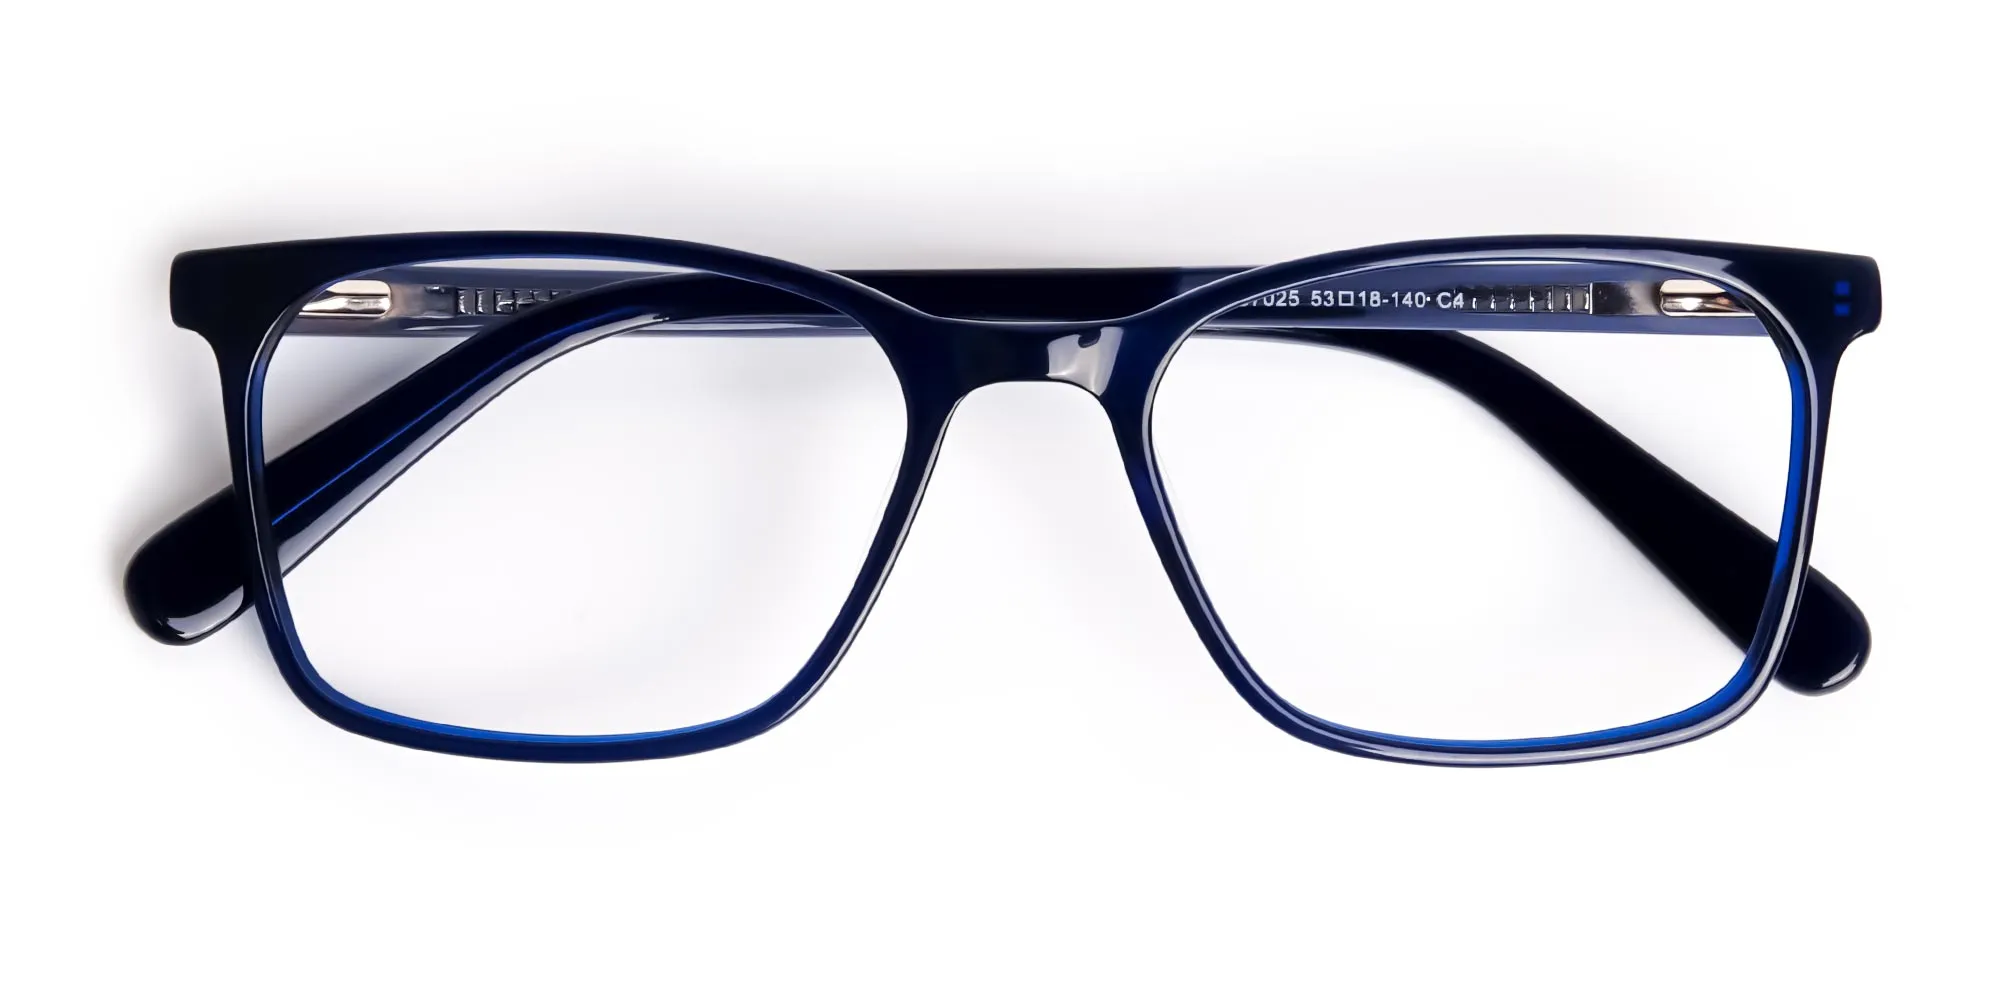 royal-blue-rectangular-glasses-frames-2